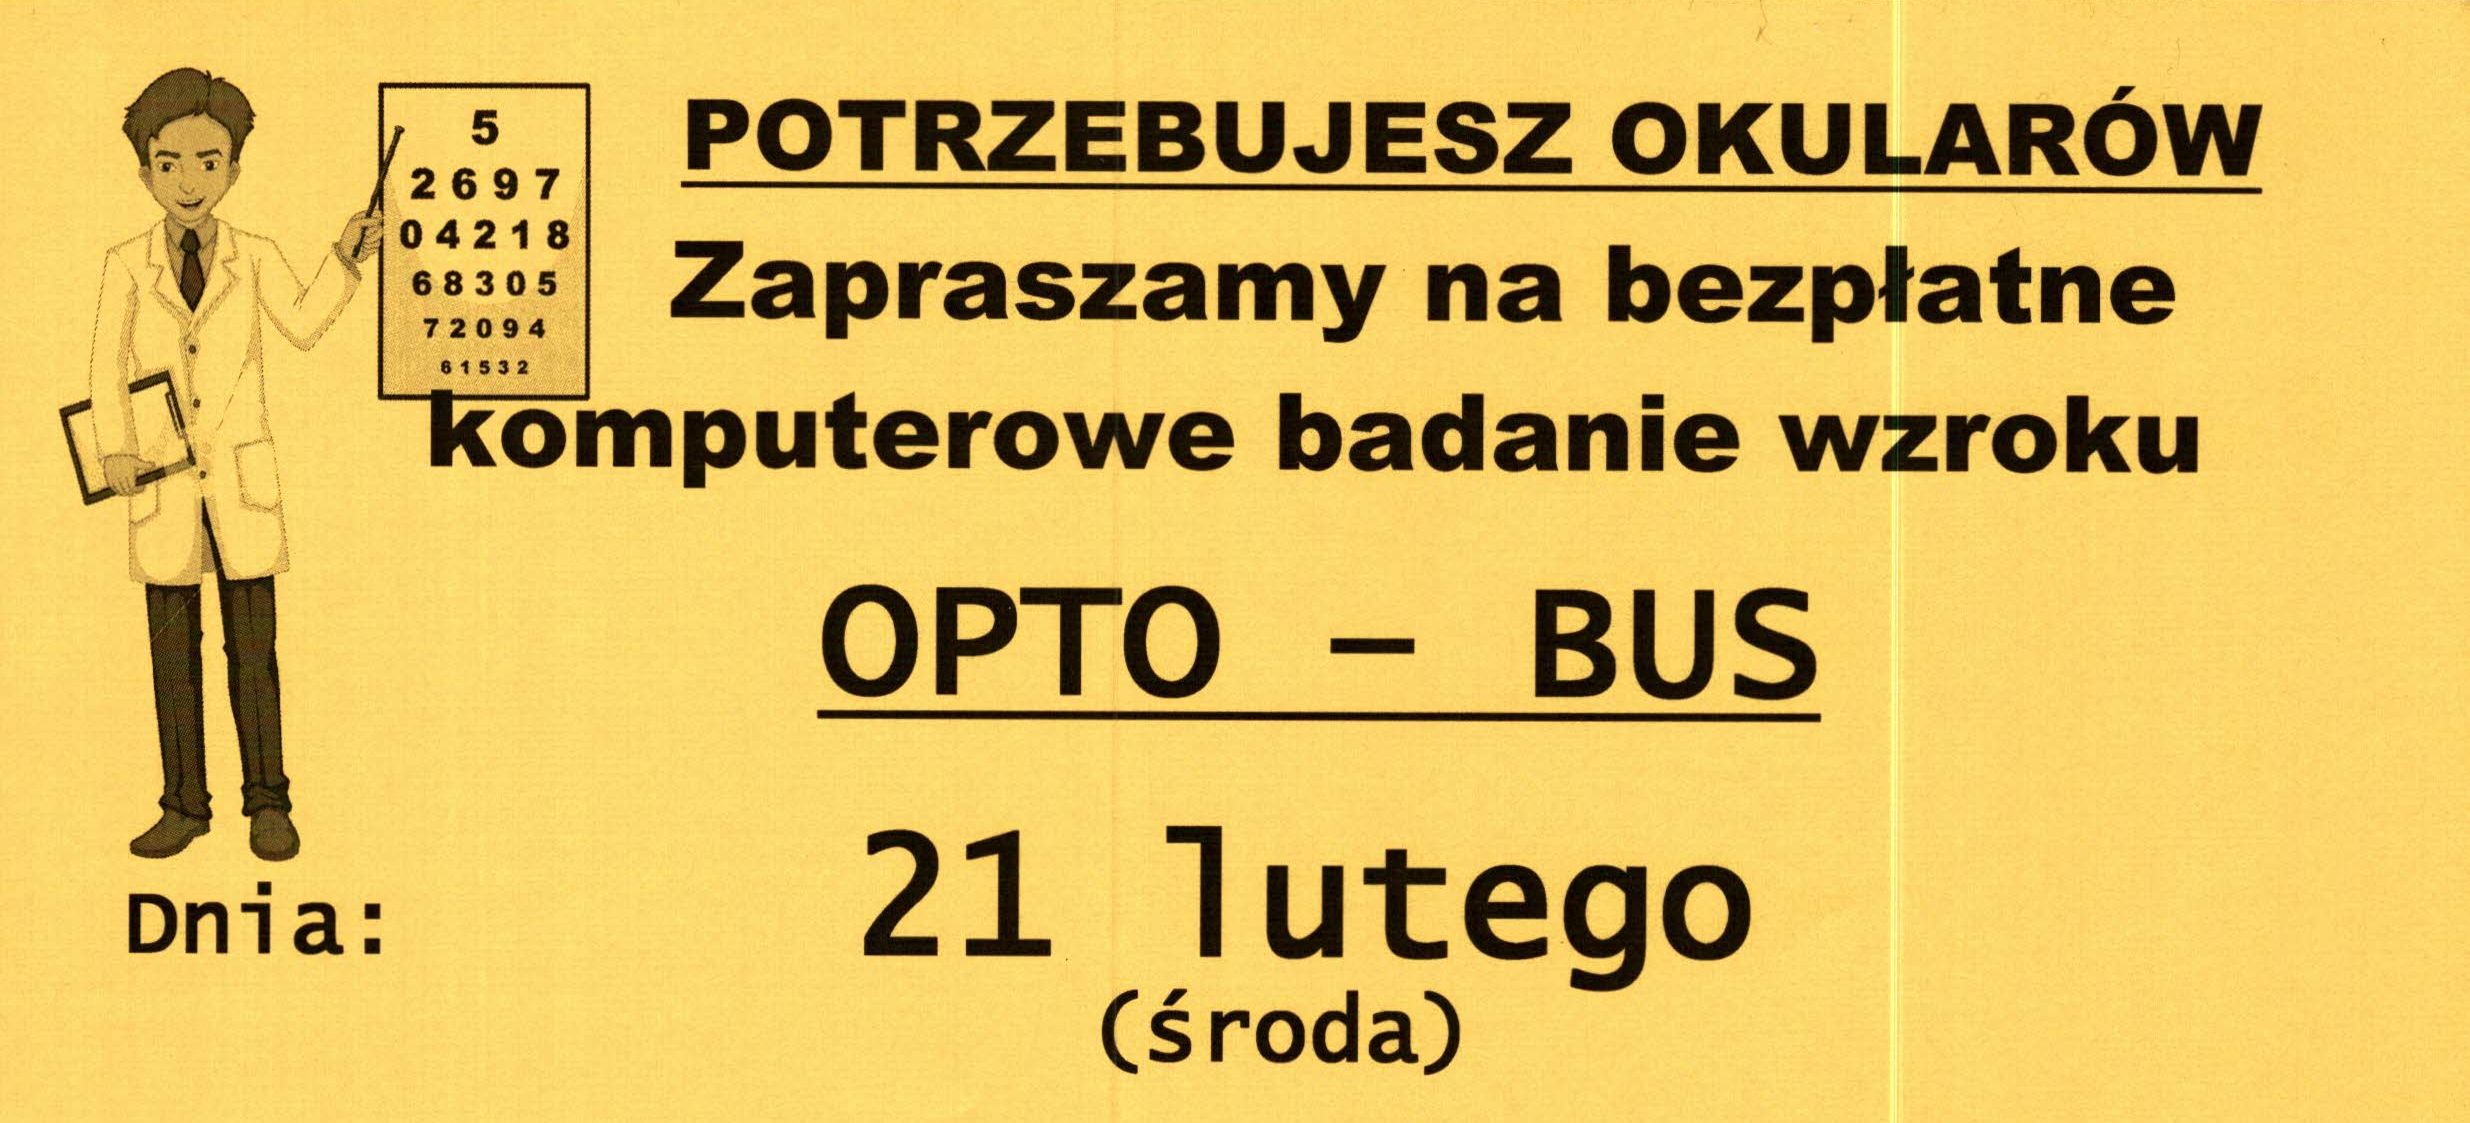 Ilustracja do informacji: Opto - bus 